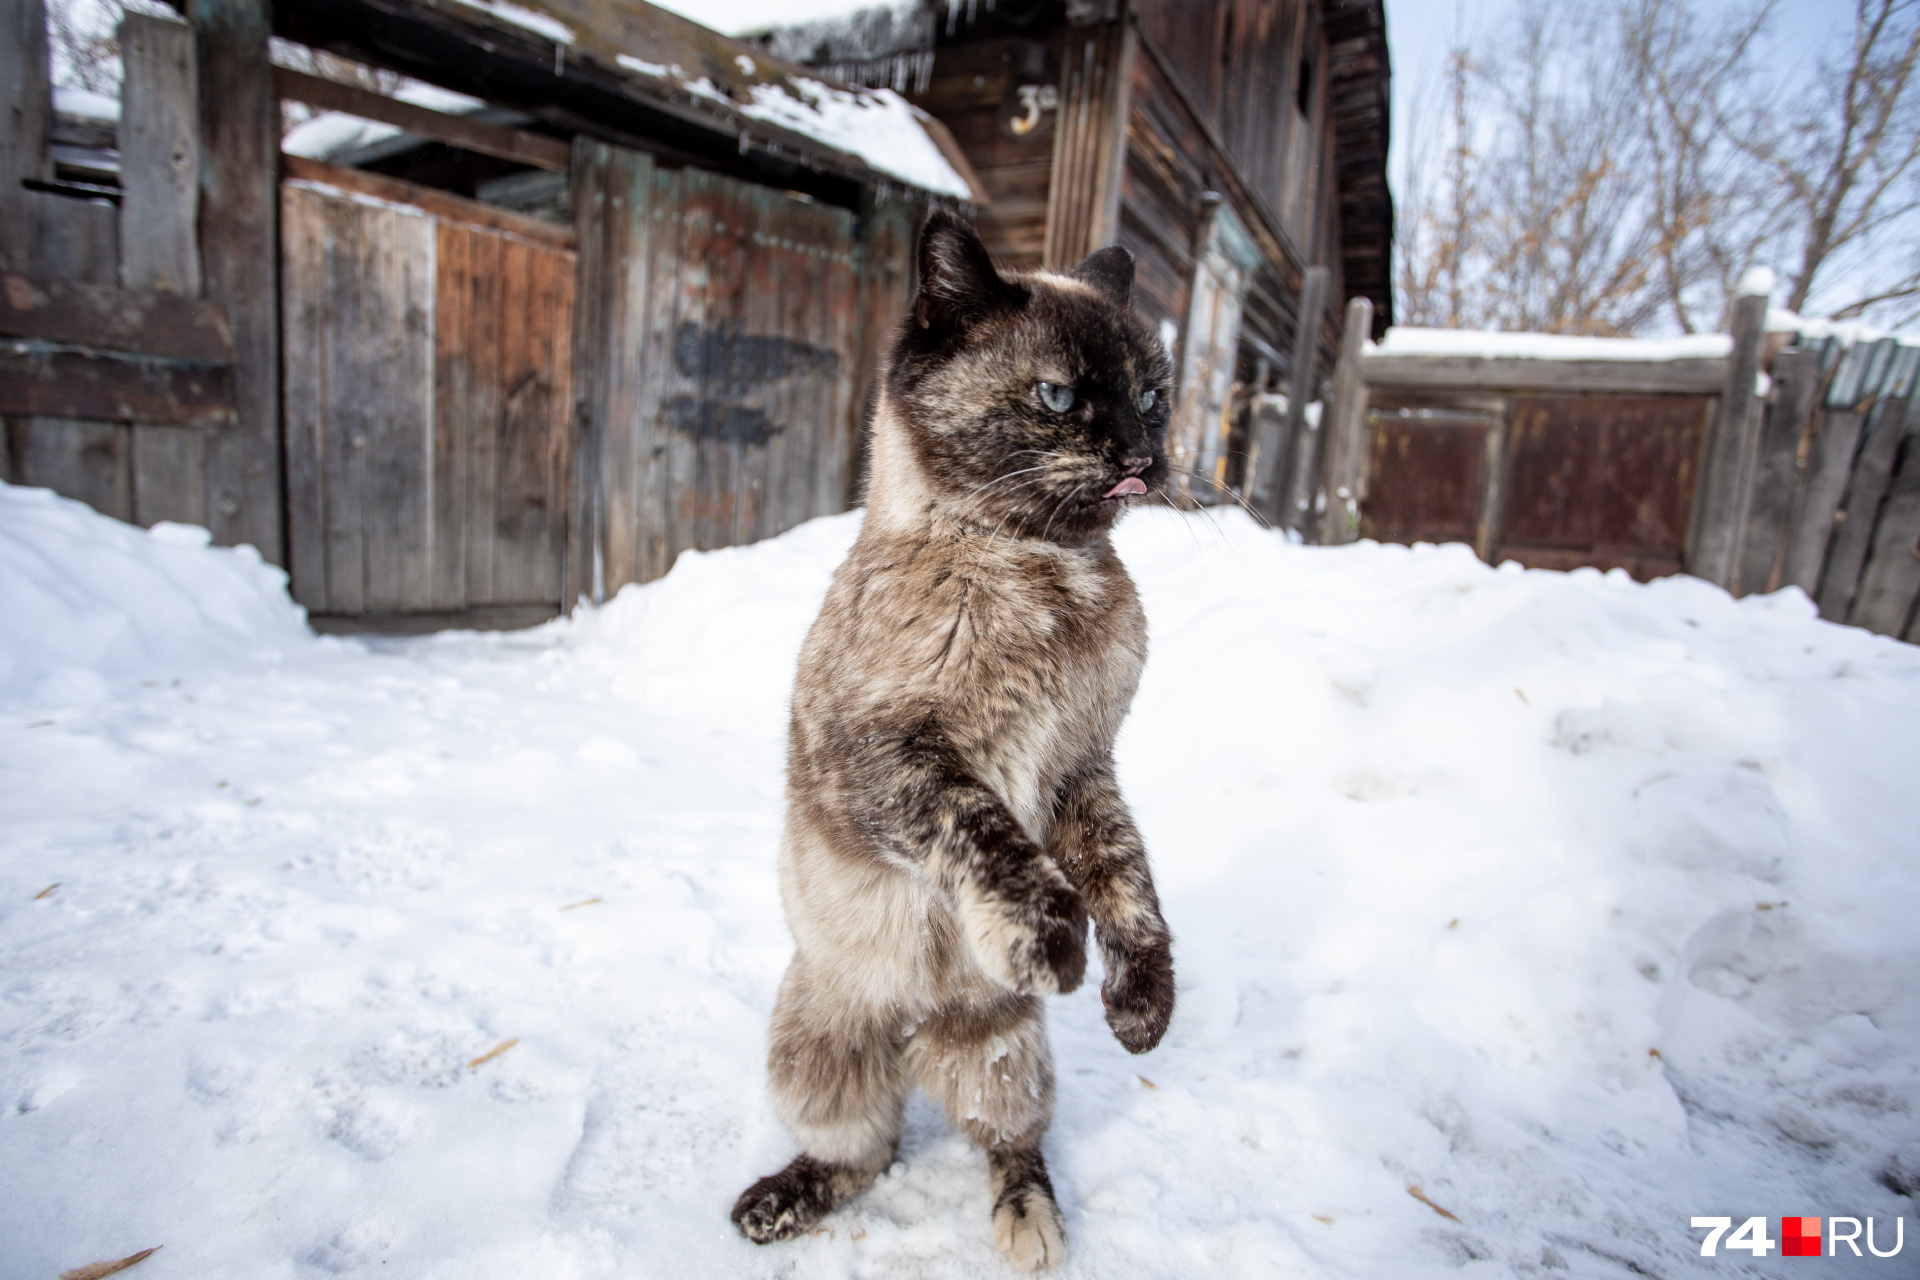 Кошки в поселке мелькомбината чужим прохода не дают: требуют погладить